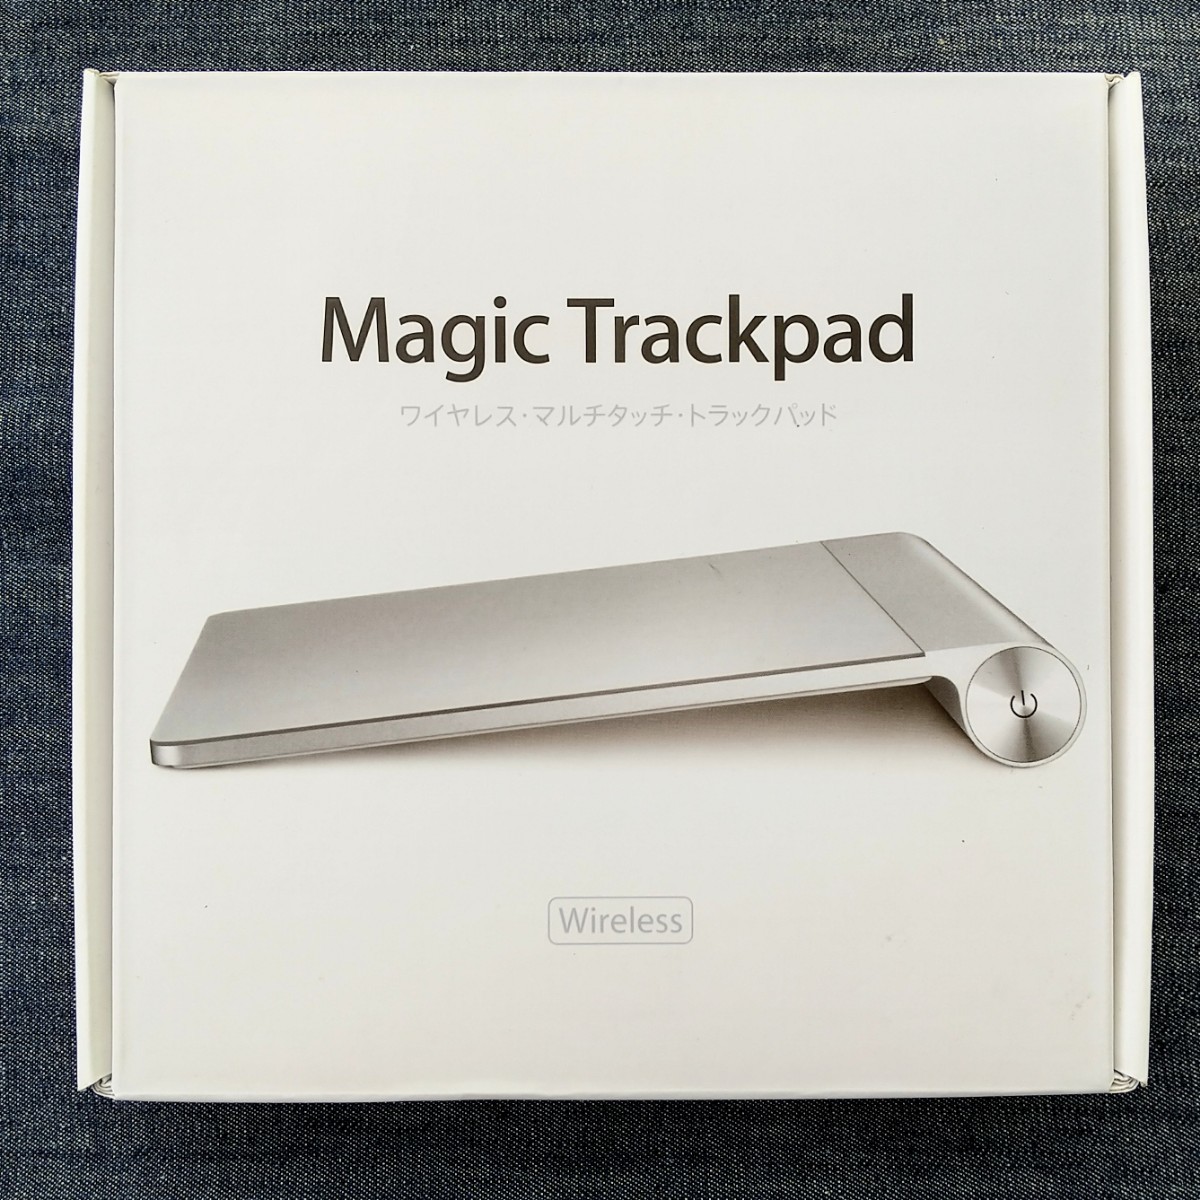 ◎Apple Magictrackpad 第1世代/ マジック トラックパッド / マルチタッチ